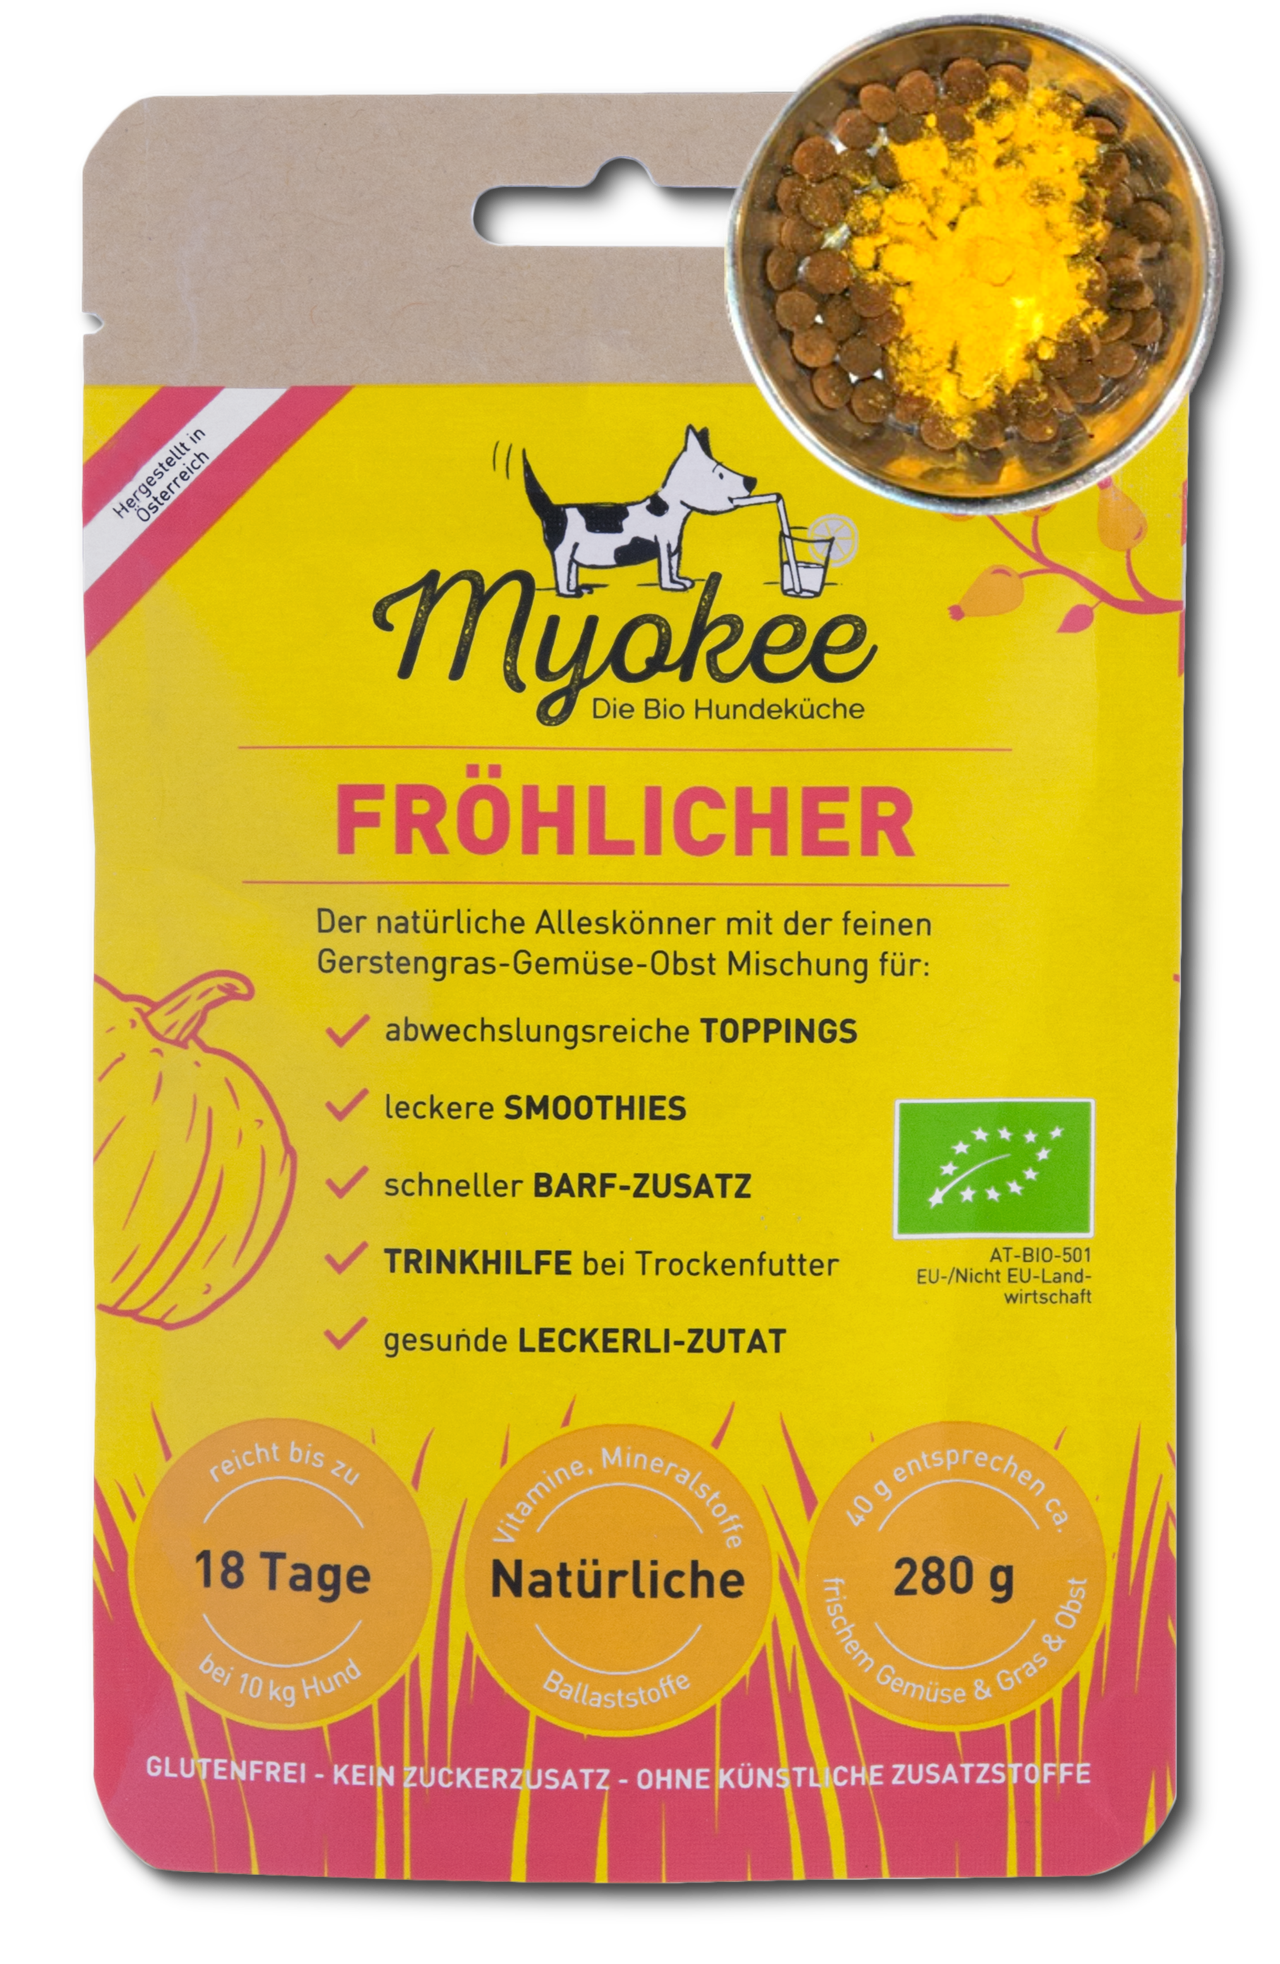 MYOKEE - Die Bio Hundeküche Produkt-Beispiele FRÖHLICHER